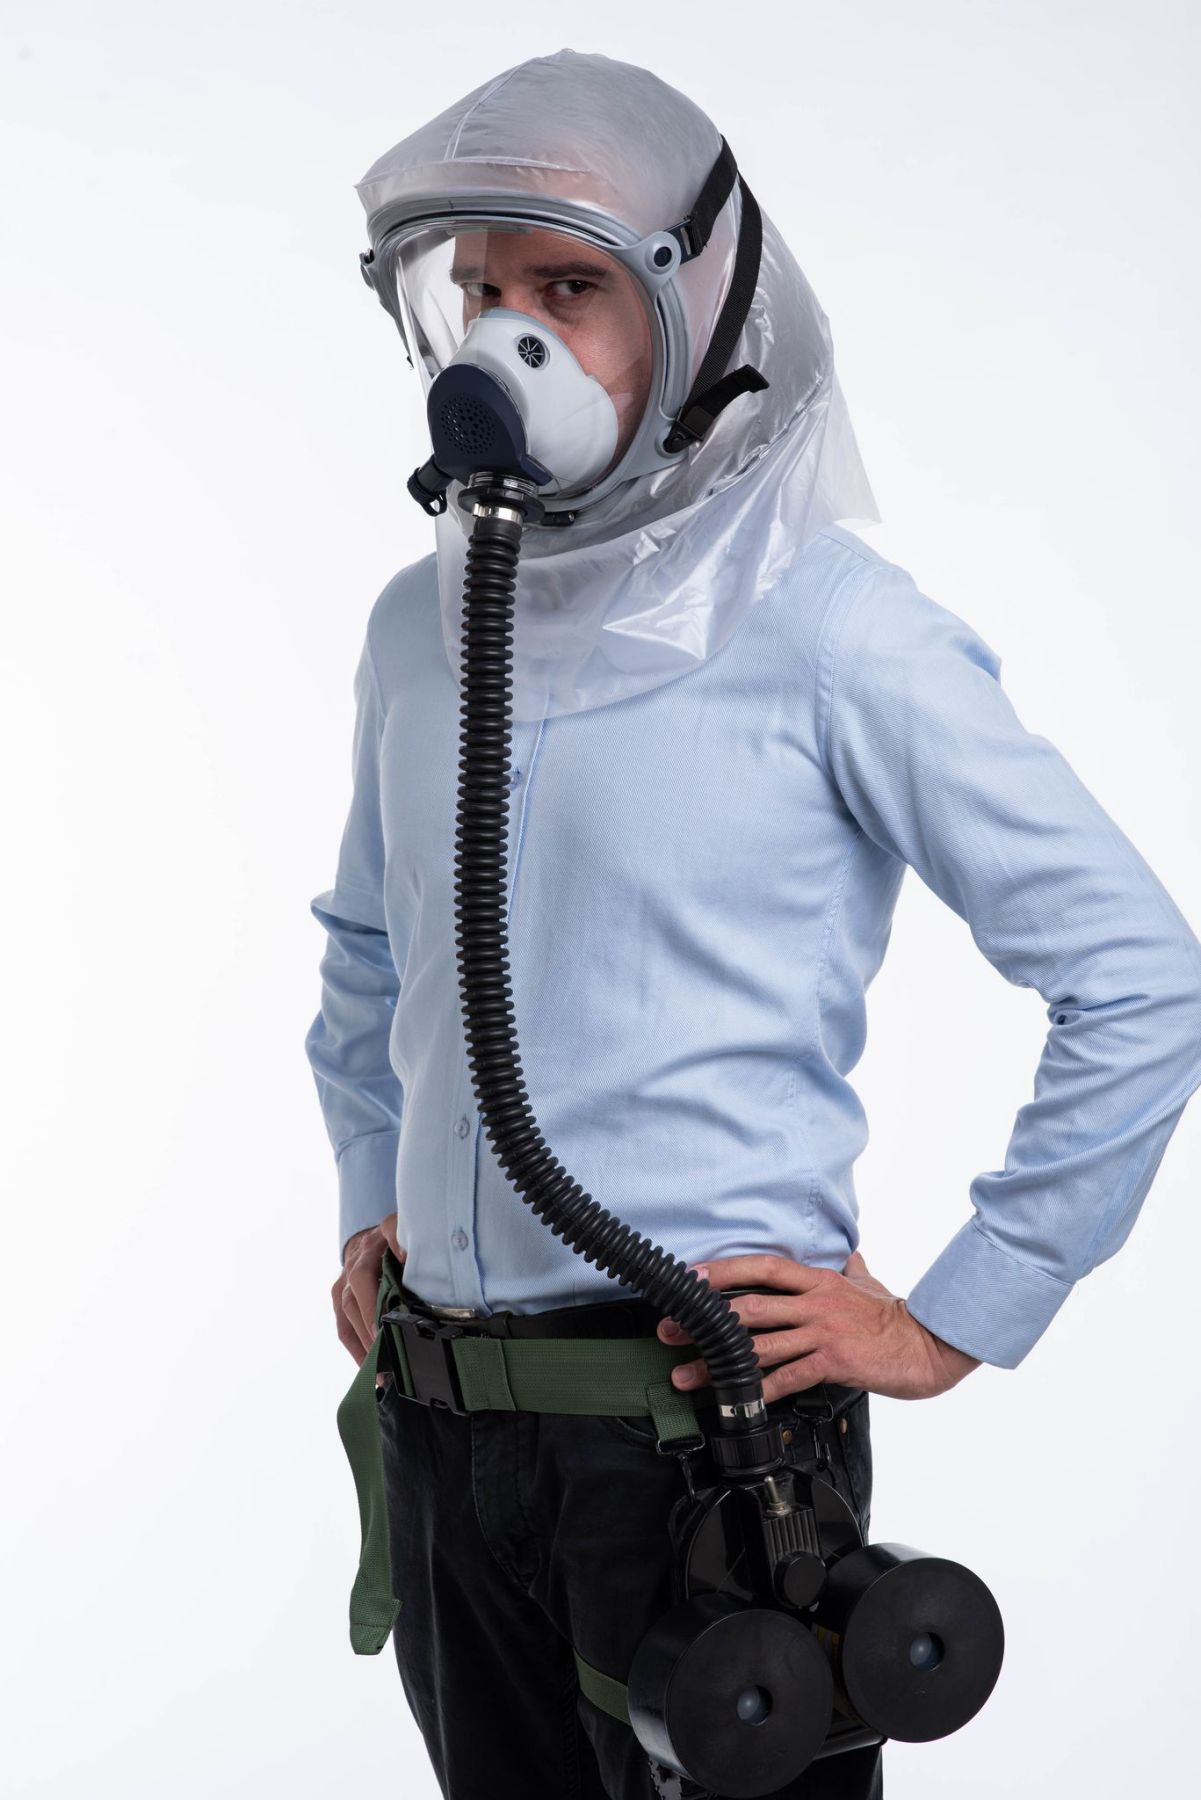 Les gaz lacrymogènes – Ouvry – Systèmes de protection NRBC